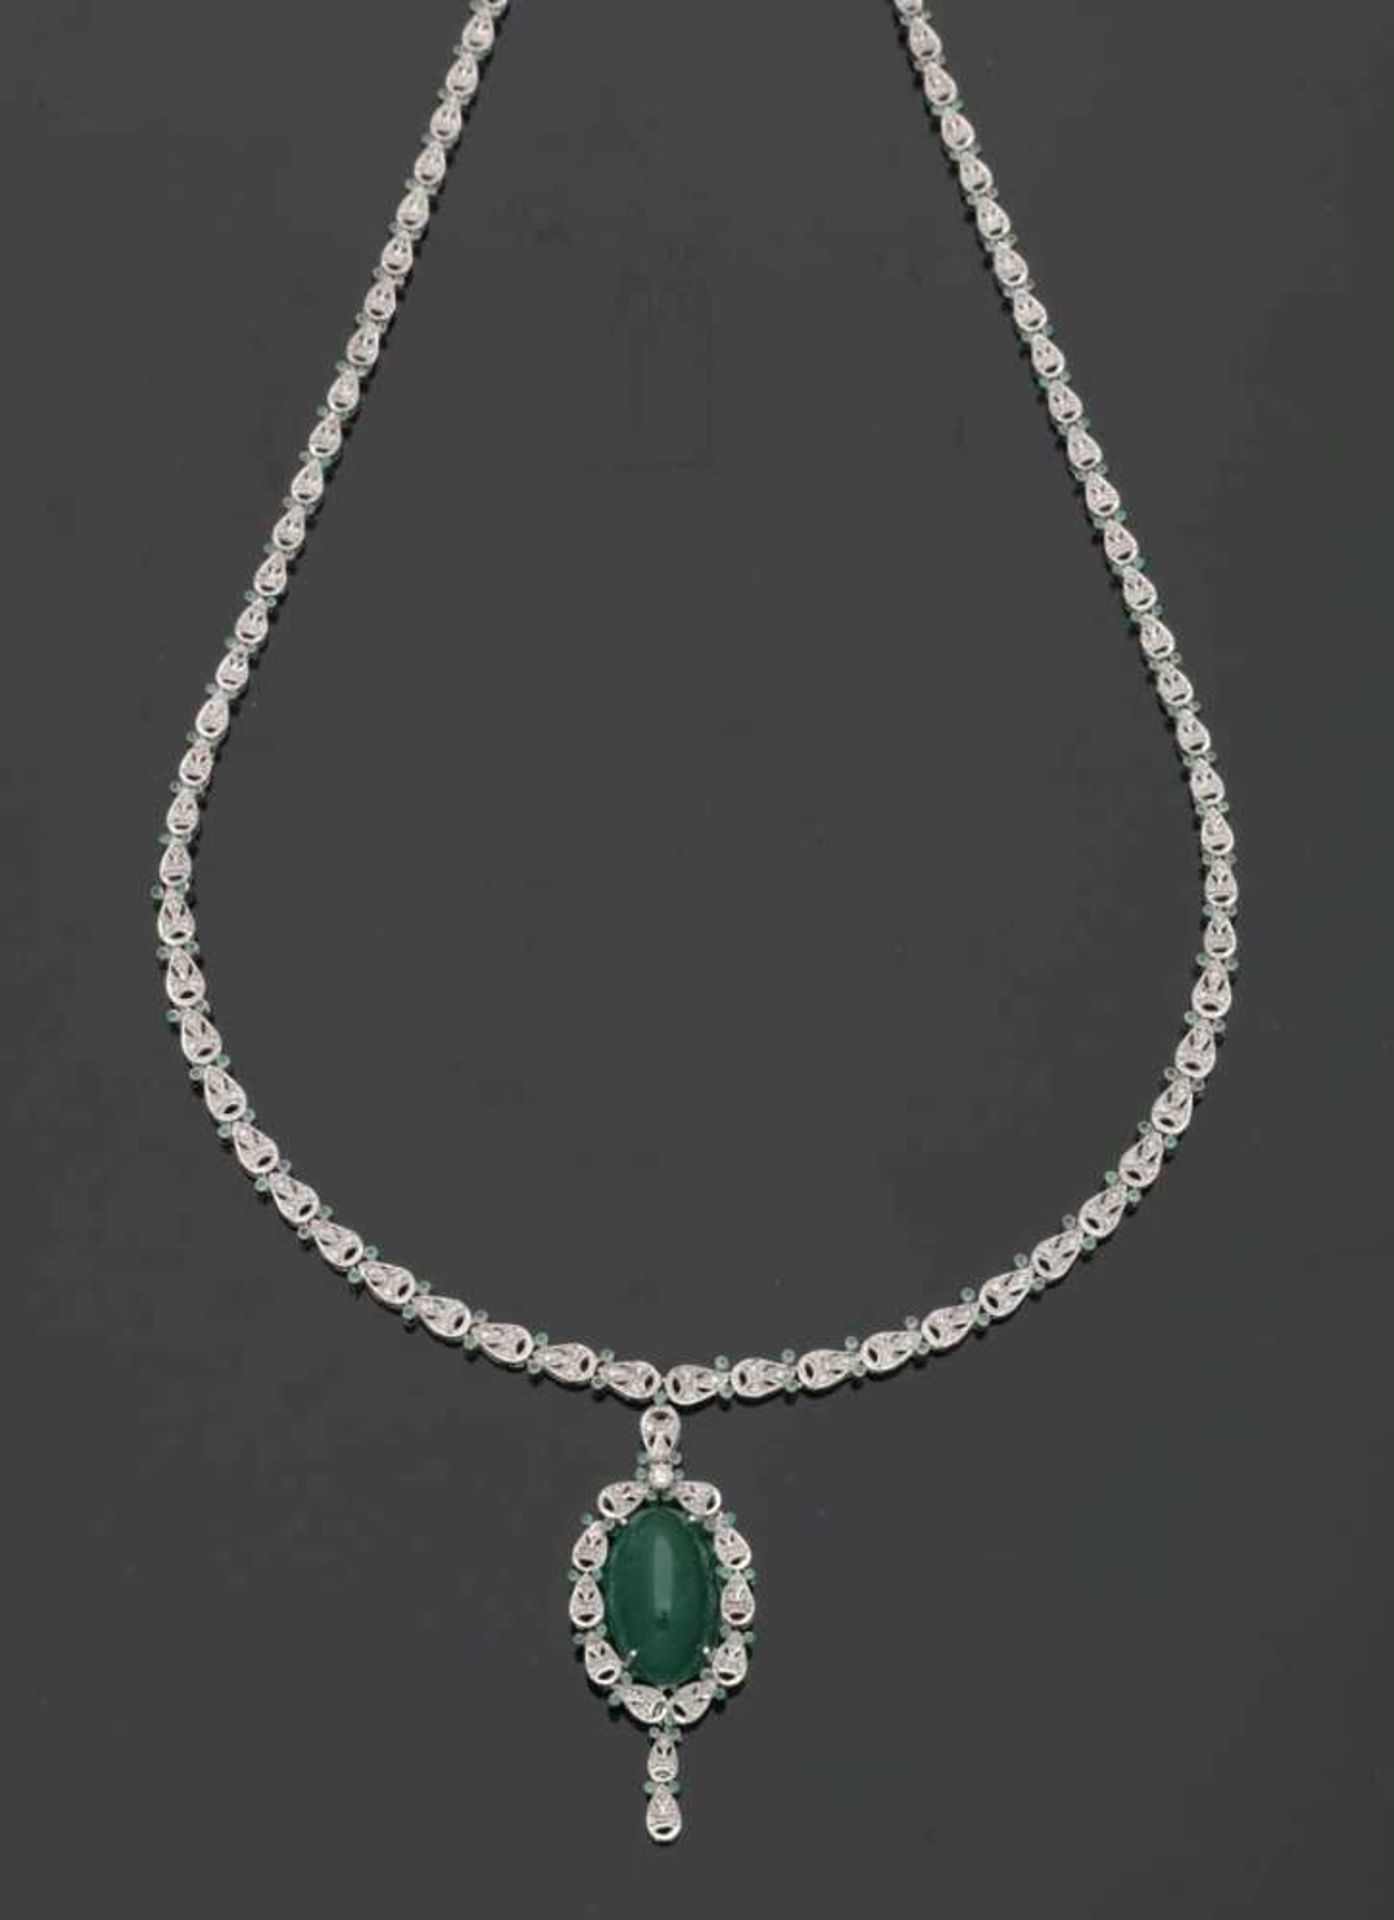 Diamantcollier mit einem großen Smaragd585er WG, gestemp. 1 großer, ovaler Smaragd-Cabochon von - Bild 2 aus 2